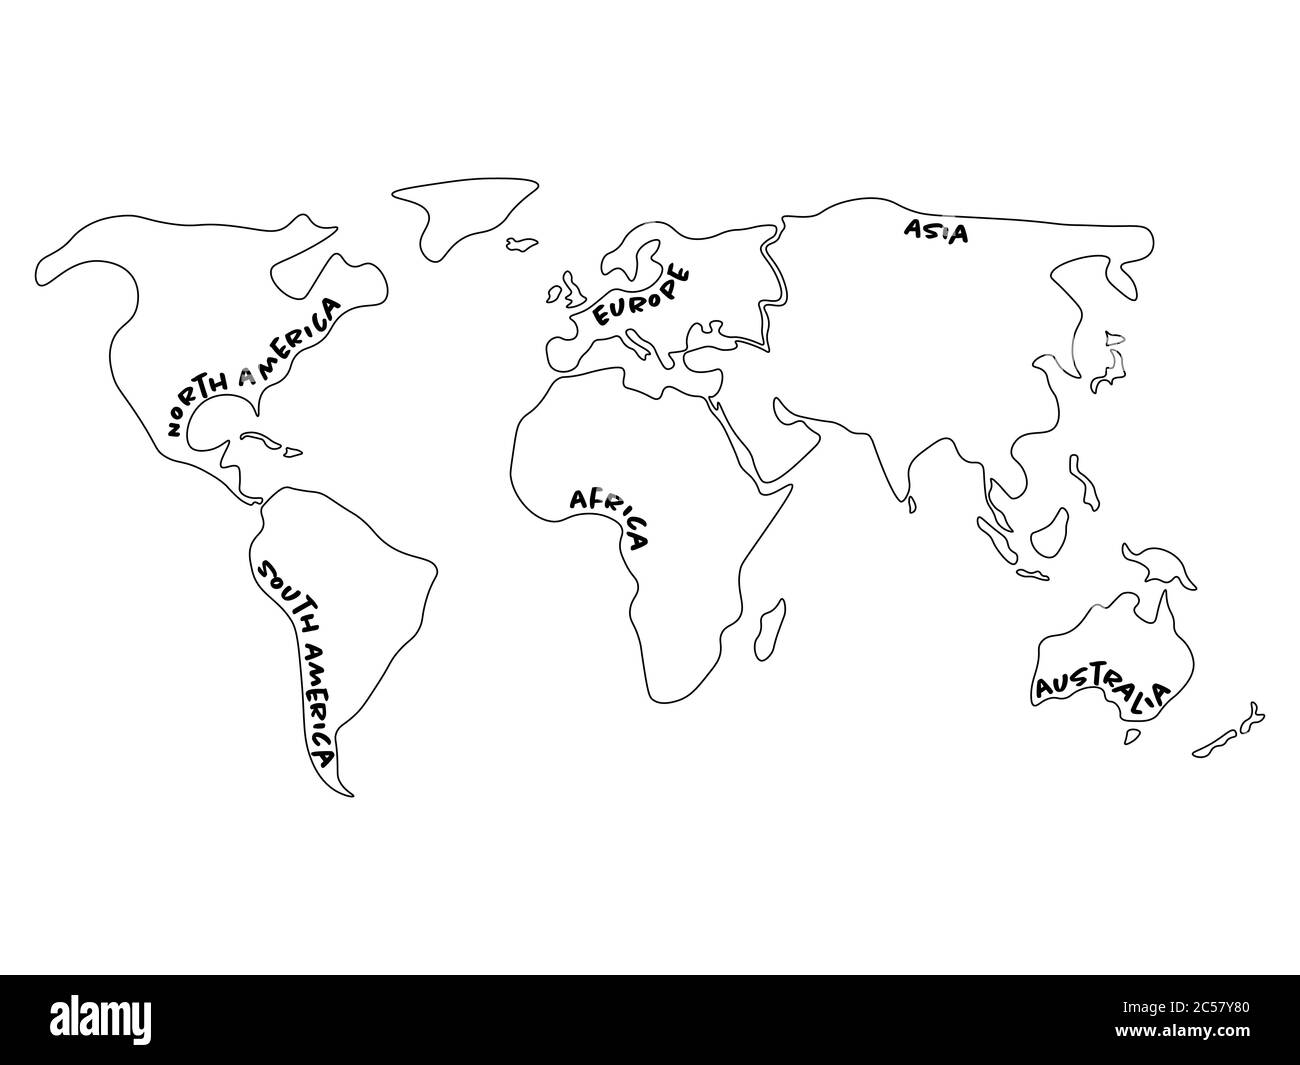 Weltkarte unterteilt in sechs Kontinente - Nordamerika, Südamerika, Afrika, Europa, Asien und Australien Ozeanien. Vereinfachte Vektorkarte mit durch Rahmen gekrümmten Bezeichnungen für Kontinente. Stock Vektor